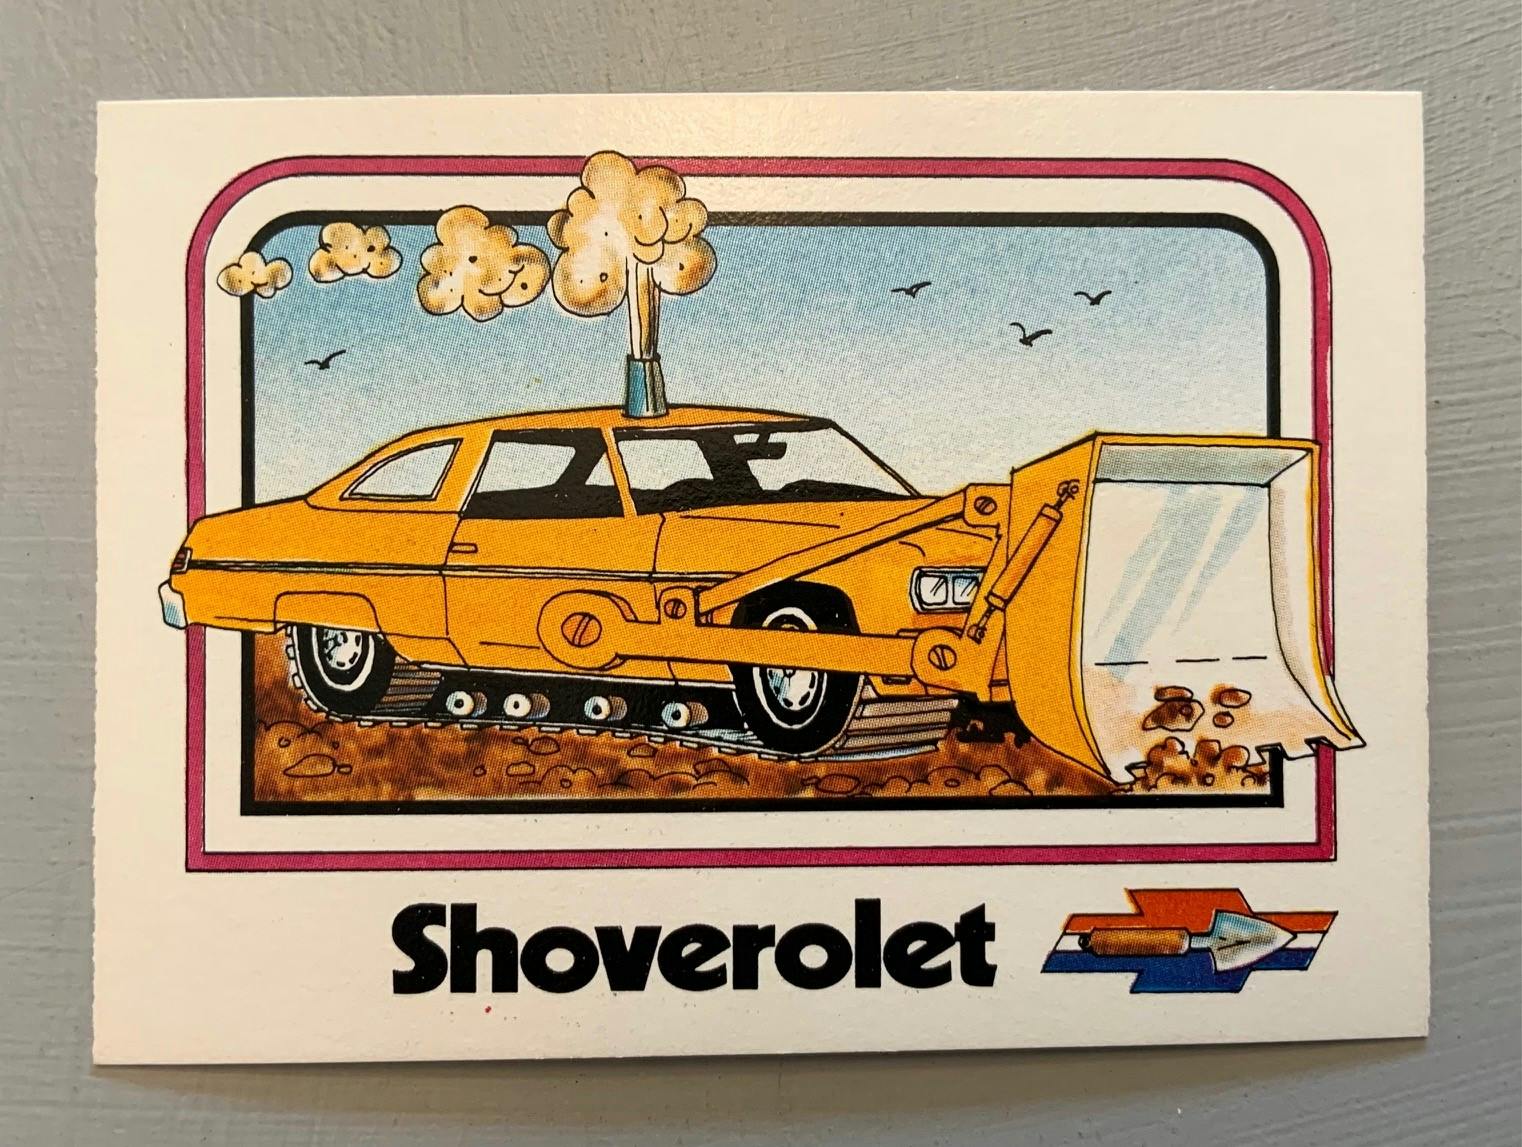 1976 Wonder Bread Krazy Cars - Shoverolet